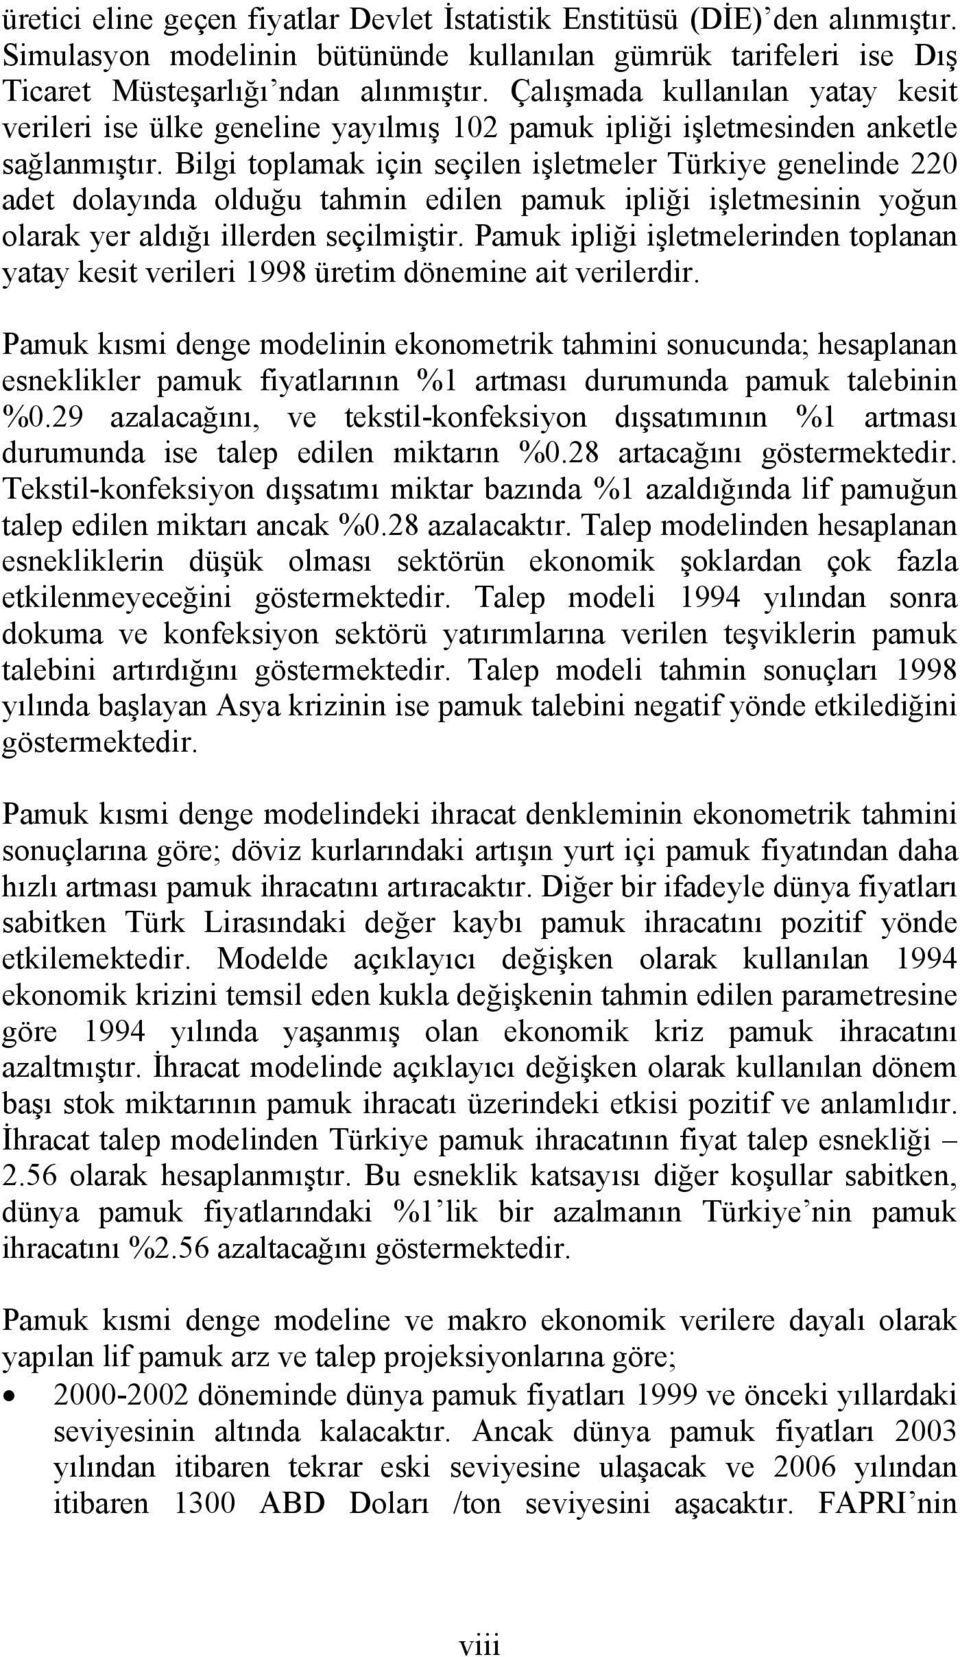 Bilgi toplamak için seçilen işletmeler Türkiye genelinde 220 adet dolayında olduğu tahmin edilen pamuk ipliği işletmesinin yoğun olarak yer aldığı illerden seçilmiştir.